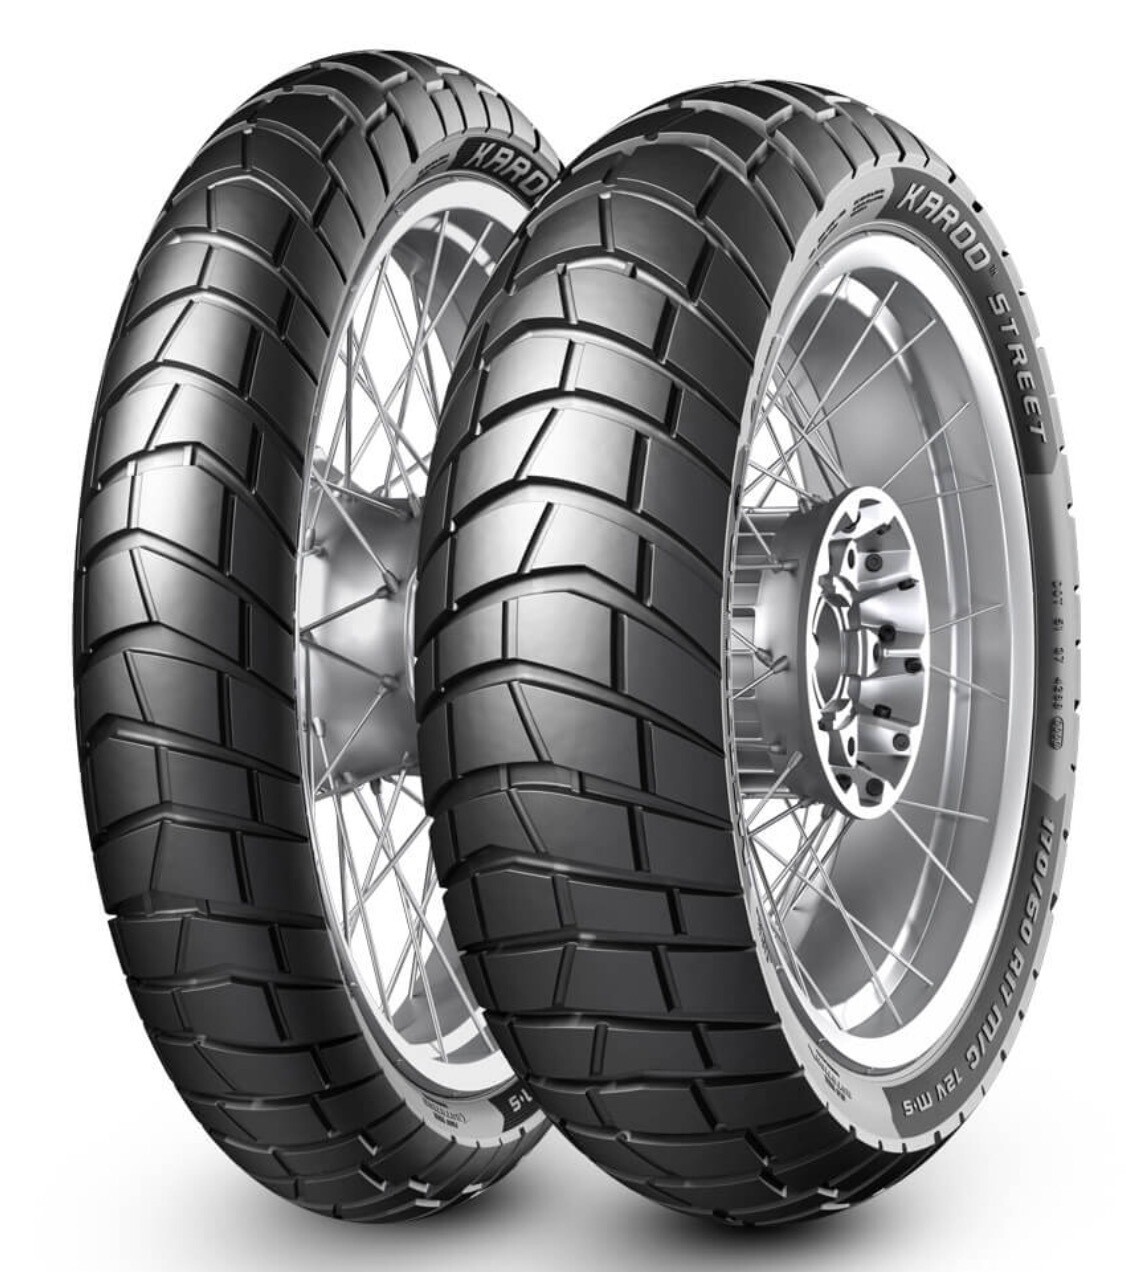 METZELER KAROO STREET 170/60R17 Tubeless 72 V Rear Two-Wheeler Tyre